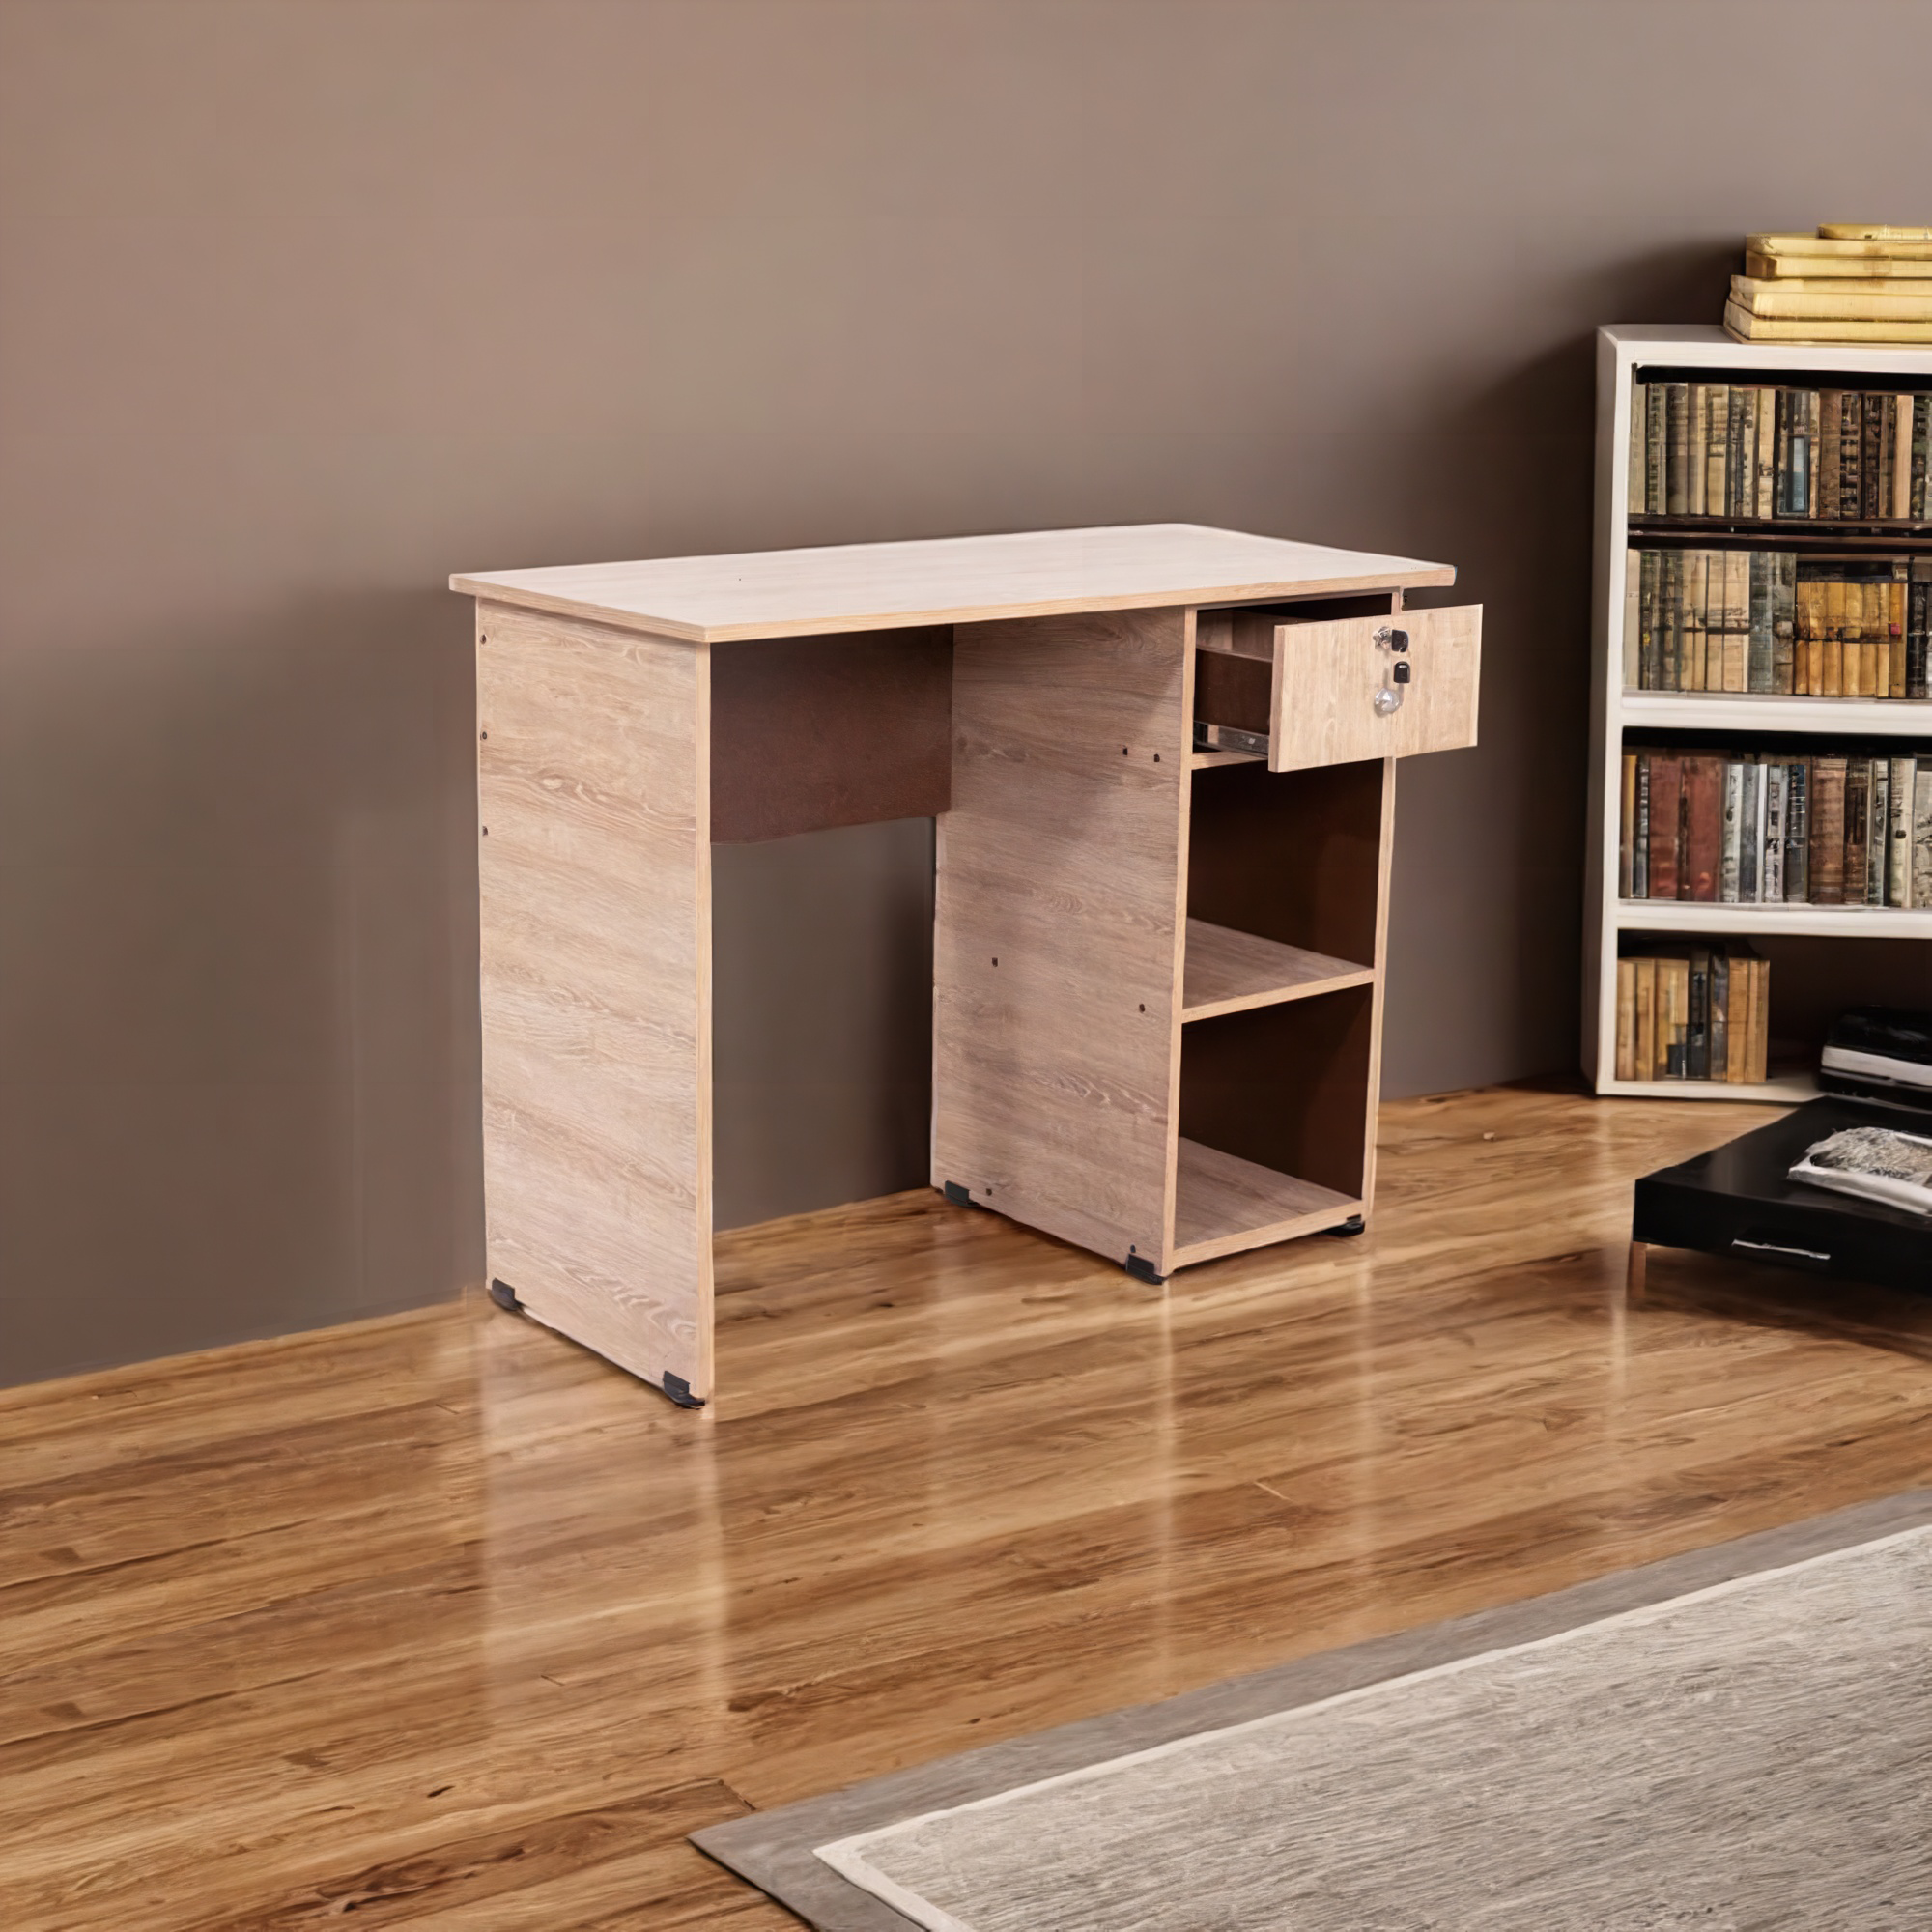 La imagen muestra un escritorio de color madera clara con un diseño minimalista y funcional. El escritorio tiene una superficie de trabajo rectangular y una estructura de soporte sencilla. A la derecha, hay una unidad de almacenamiento con un cajón superior parcialmente abierto y dos estantes abiertos debajo.